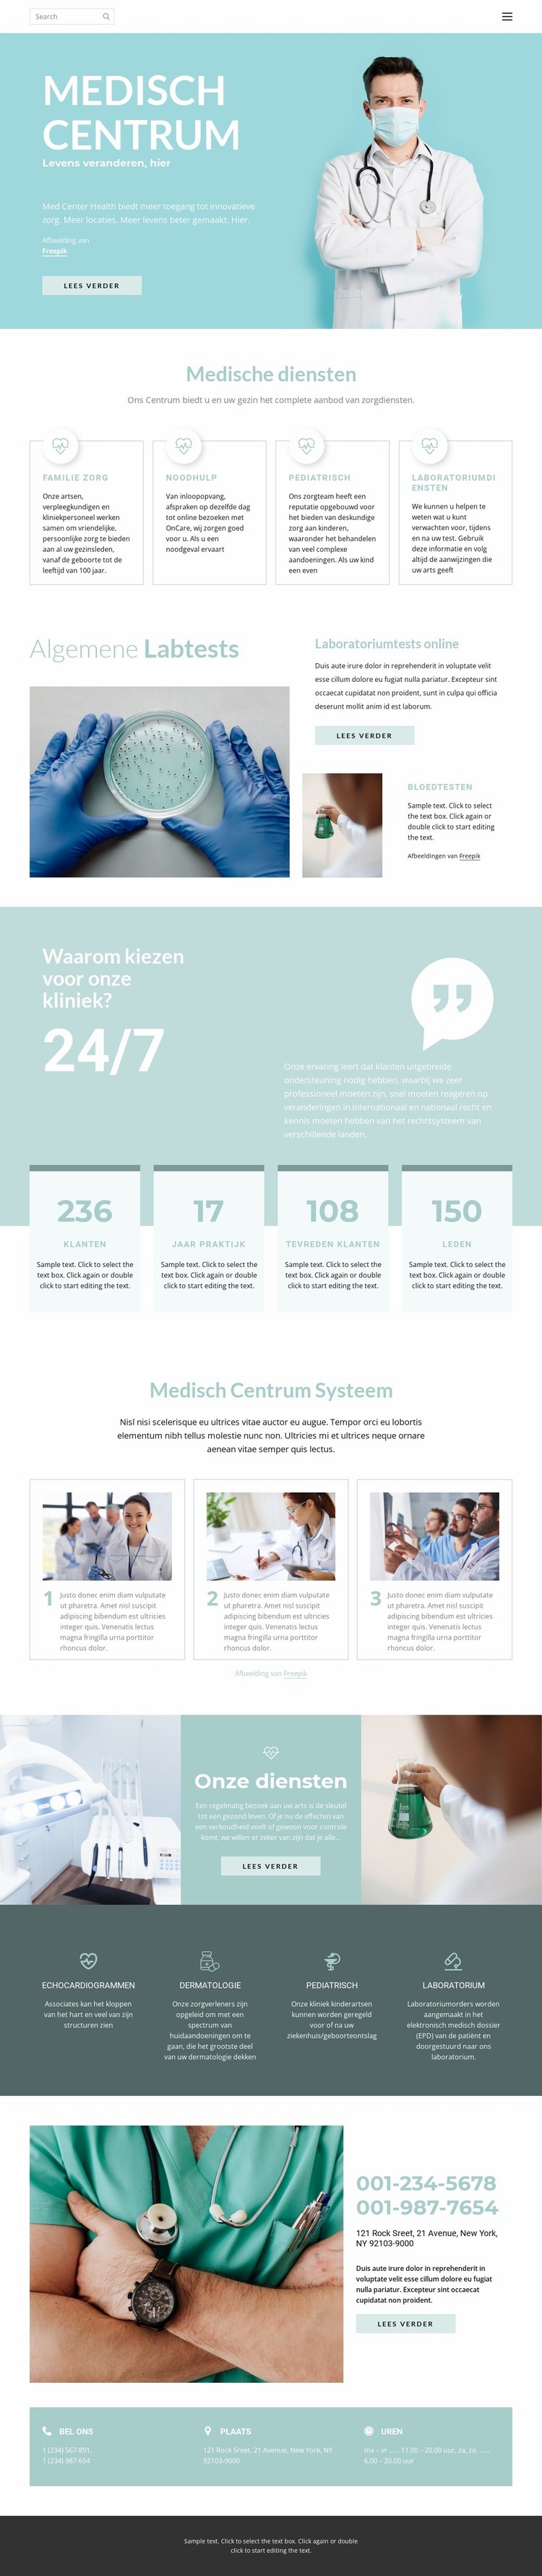 De moderne geneeskunde Website ontwerp